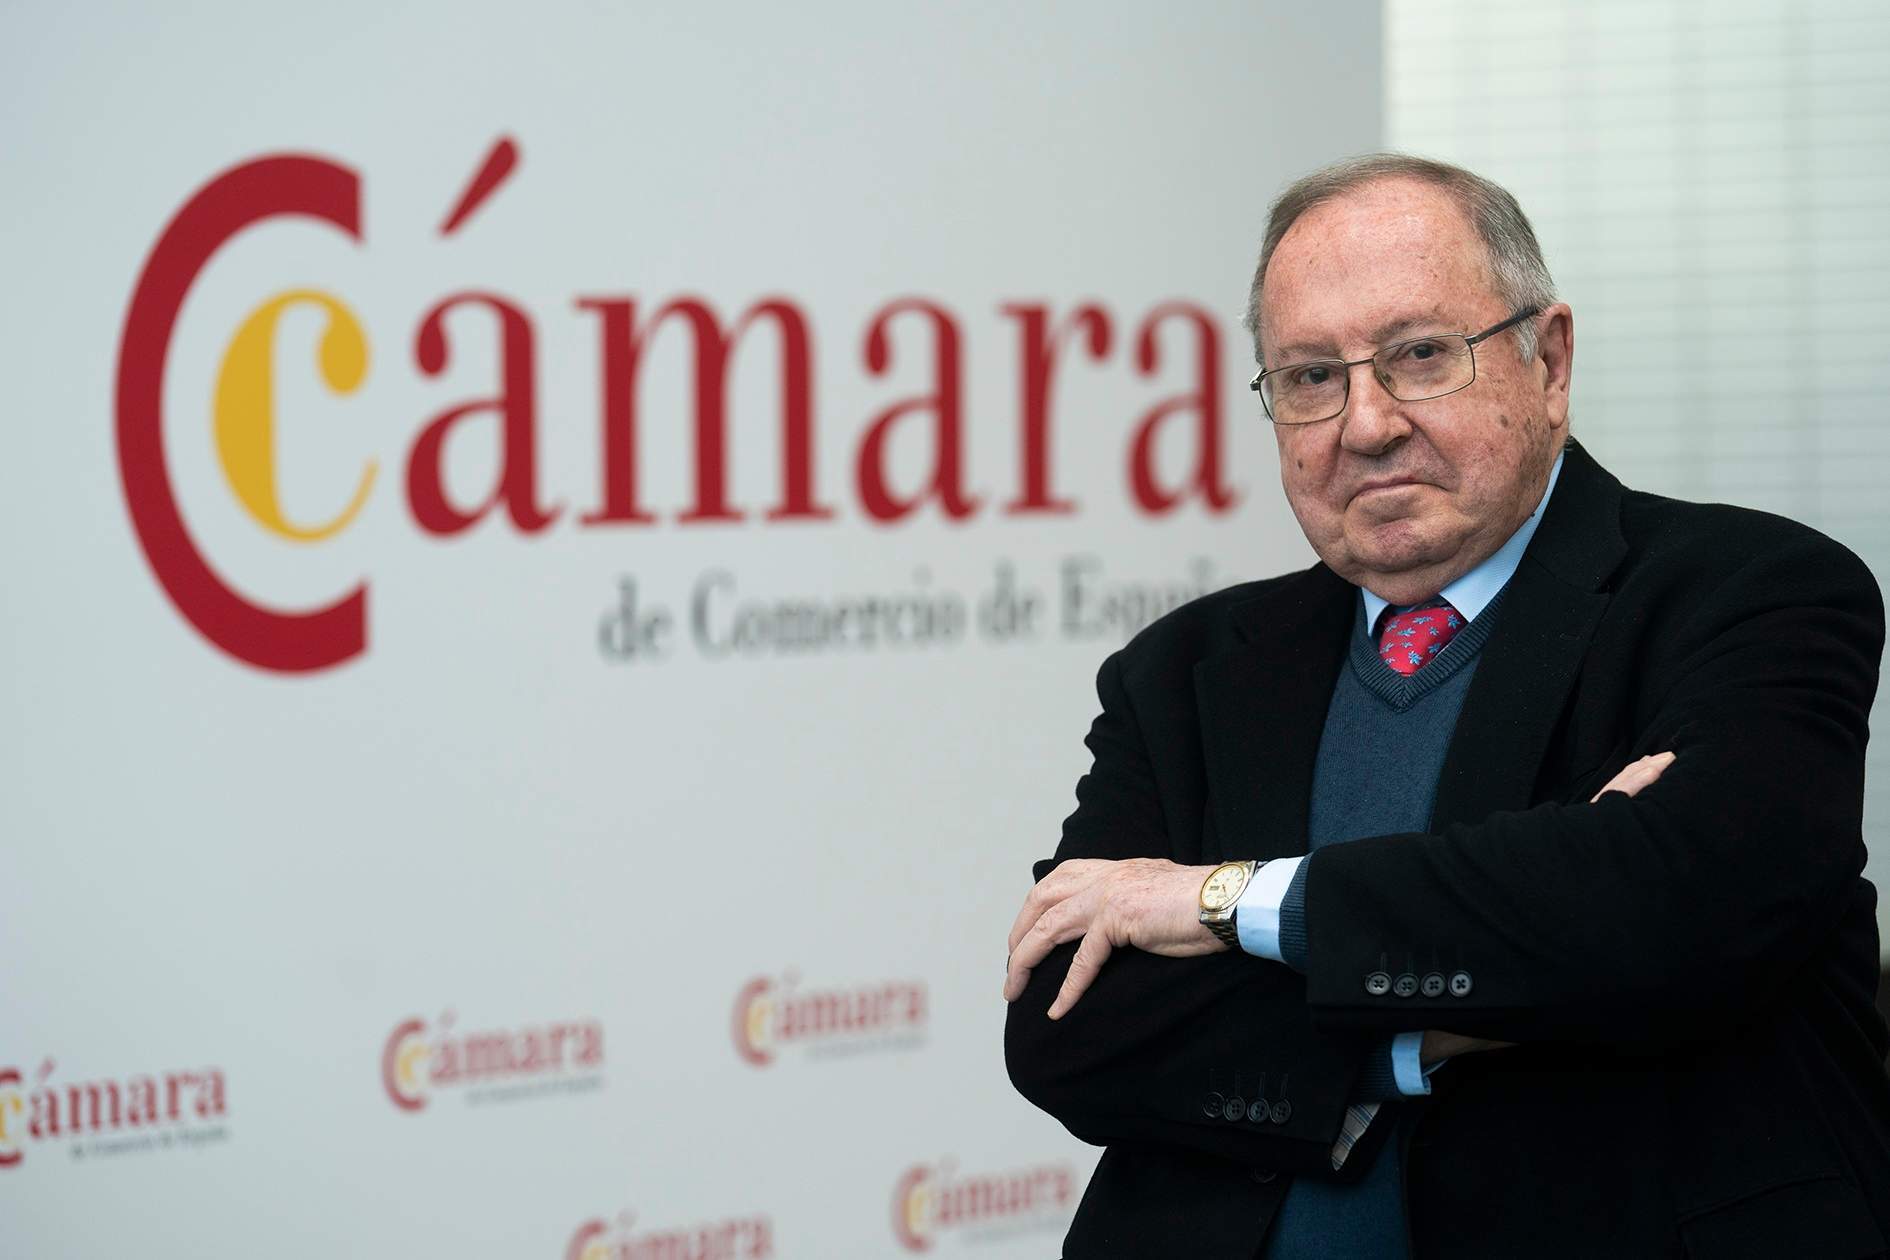 La Cámara de Comercio asegura que la economía española se comporta mejor de lo previsto